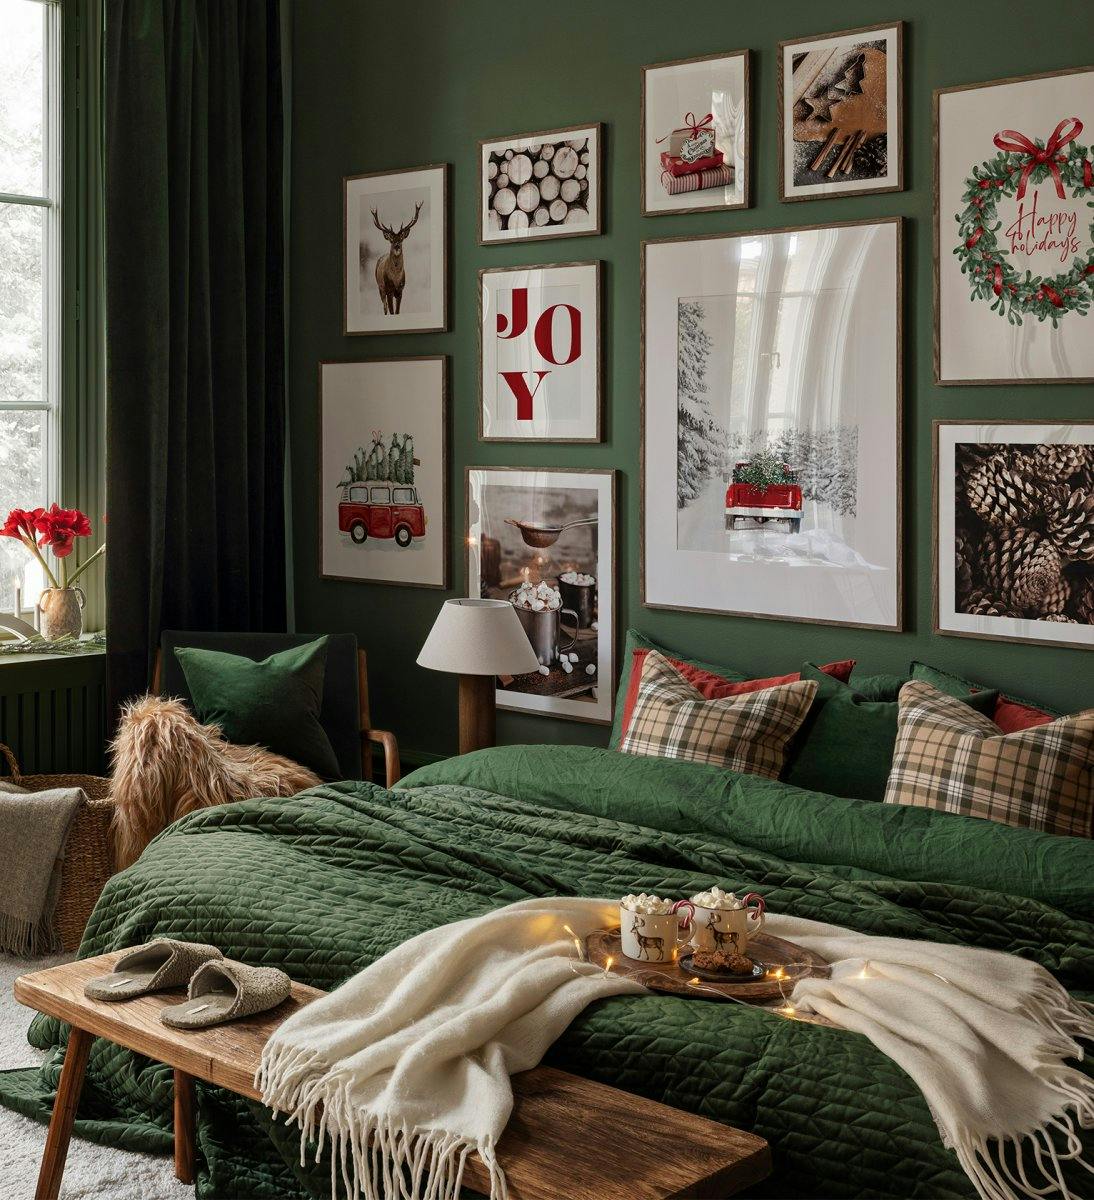 Świąteczna ściana galerii z czerwonymi i zielonymi cytatami, zdjęciami i ilustracjami z ciemnymi dębowymi ramkami do sypialni